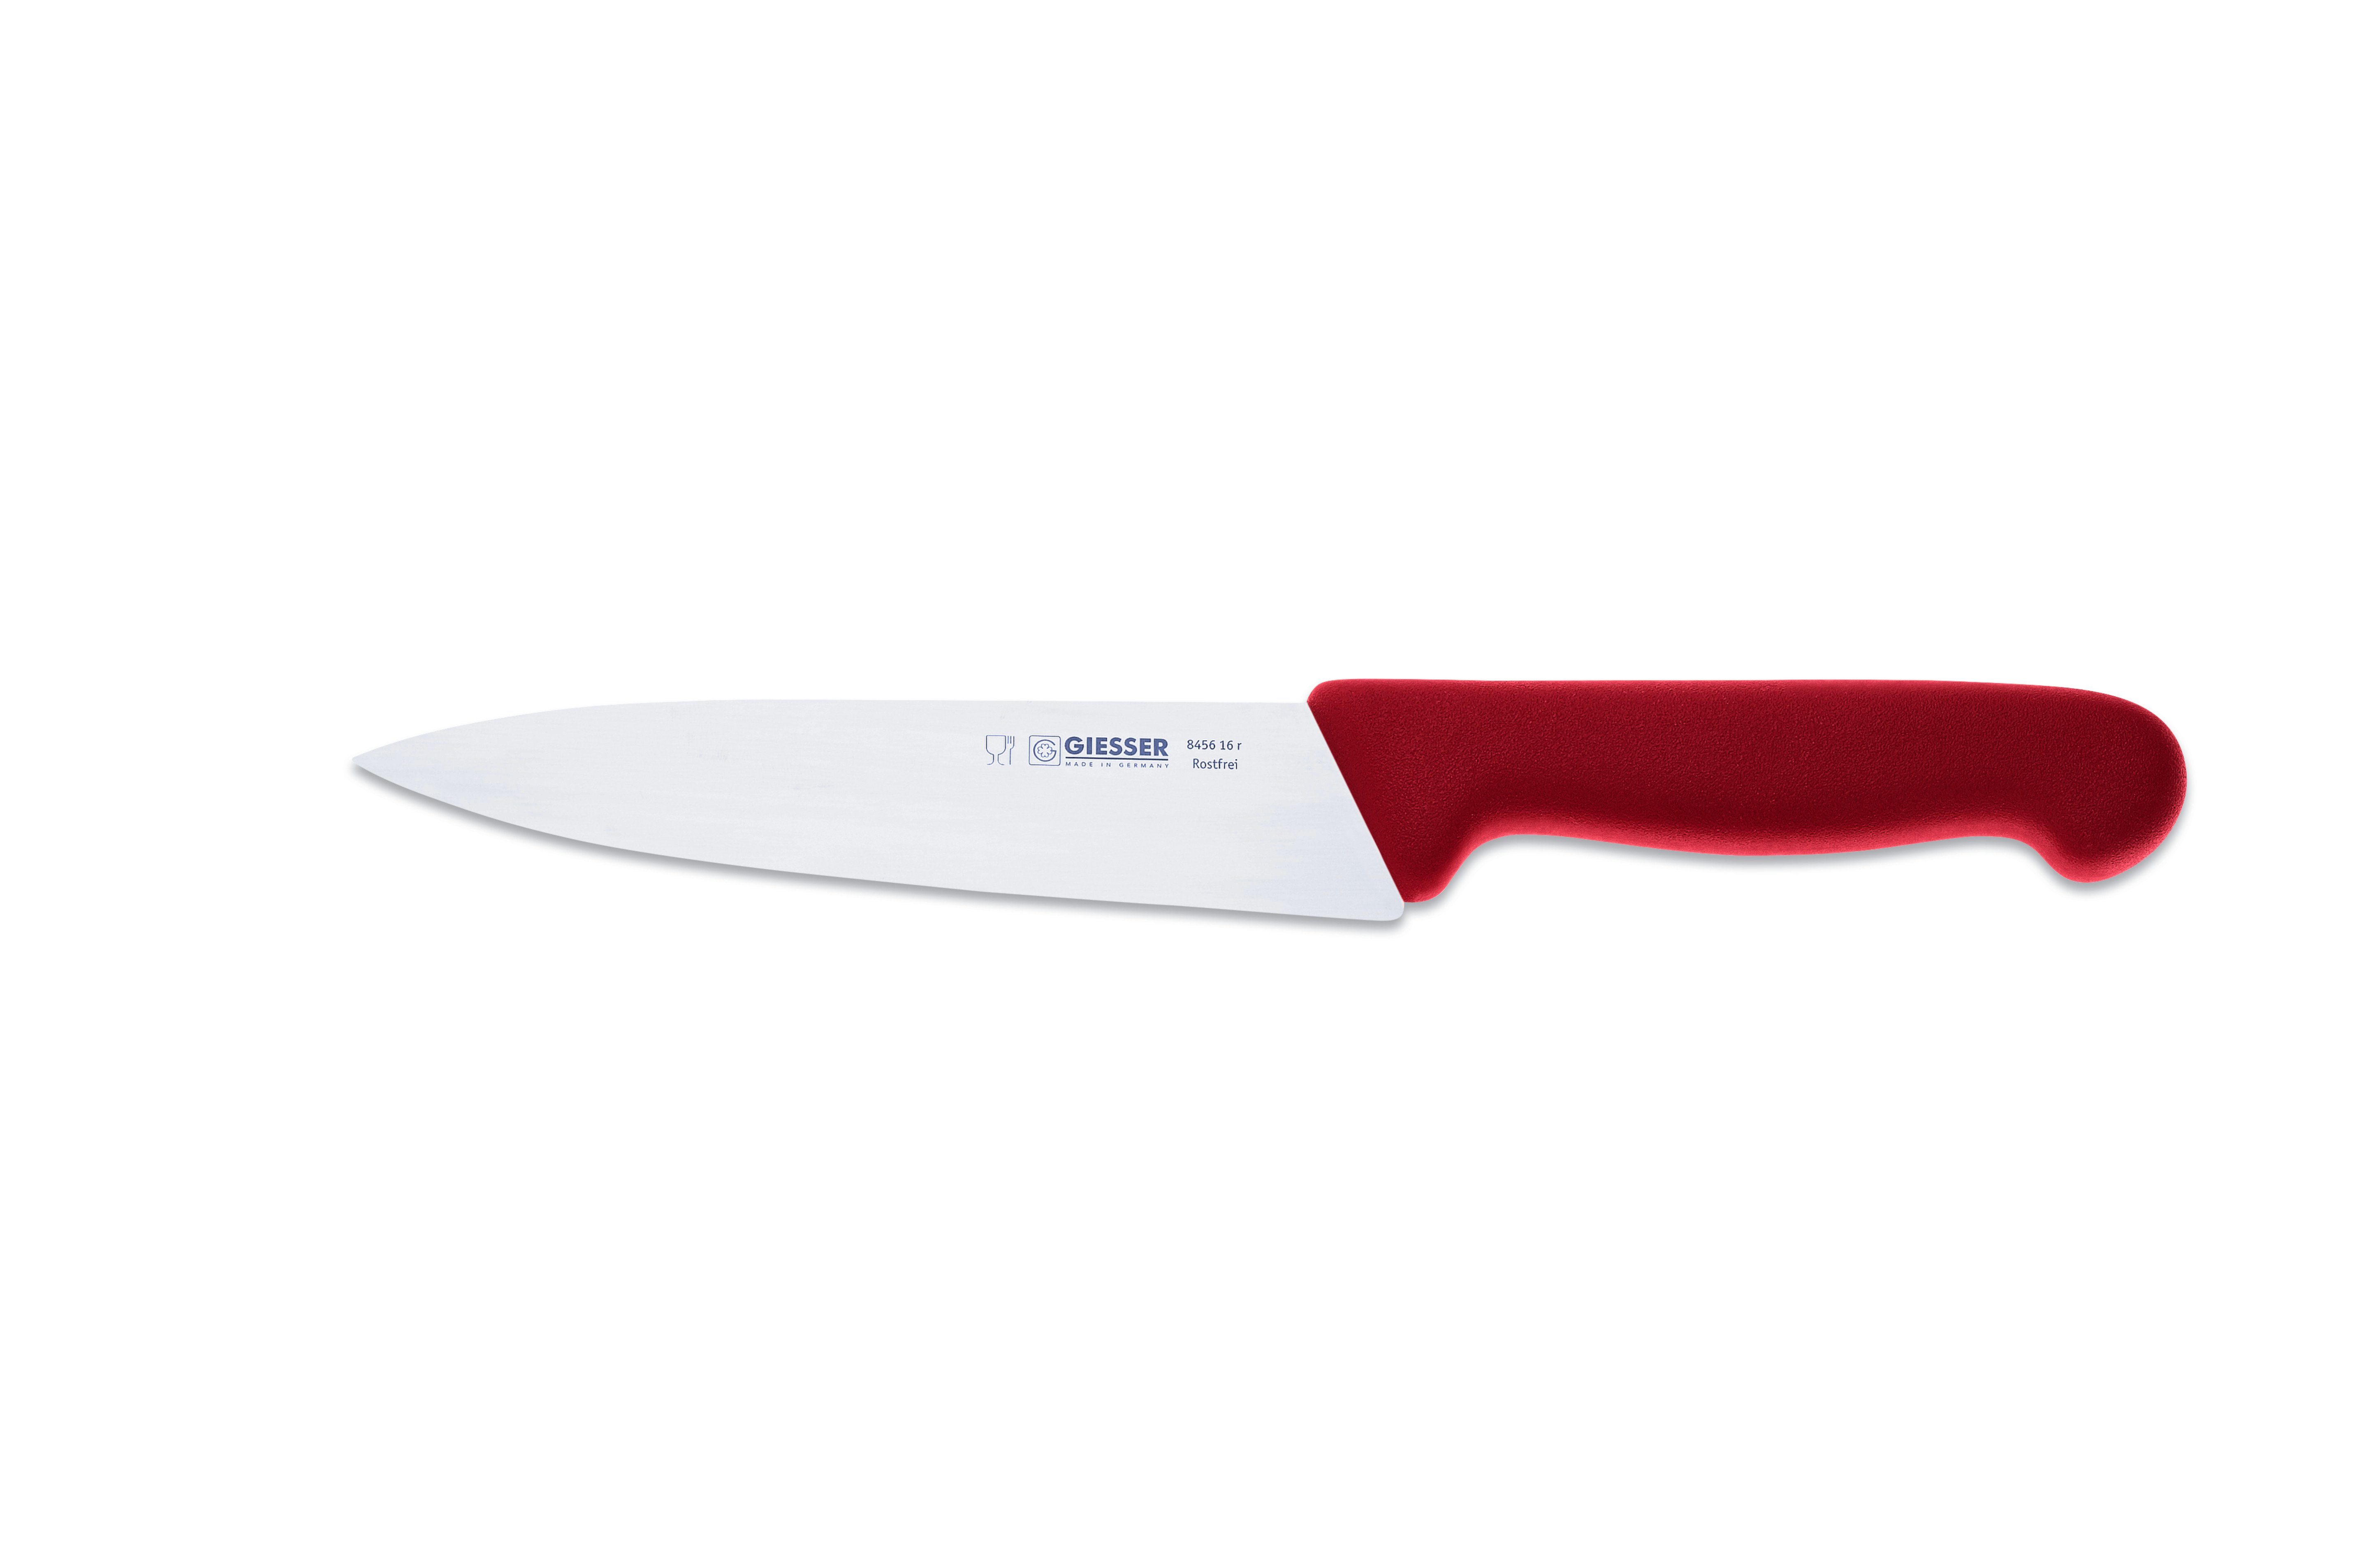 Giesser Messer Kochmesser Küchenmesser 8456, schmale, mittelspitze Klinge, scharf Handabzug, Ideal für jede Küche rot